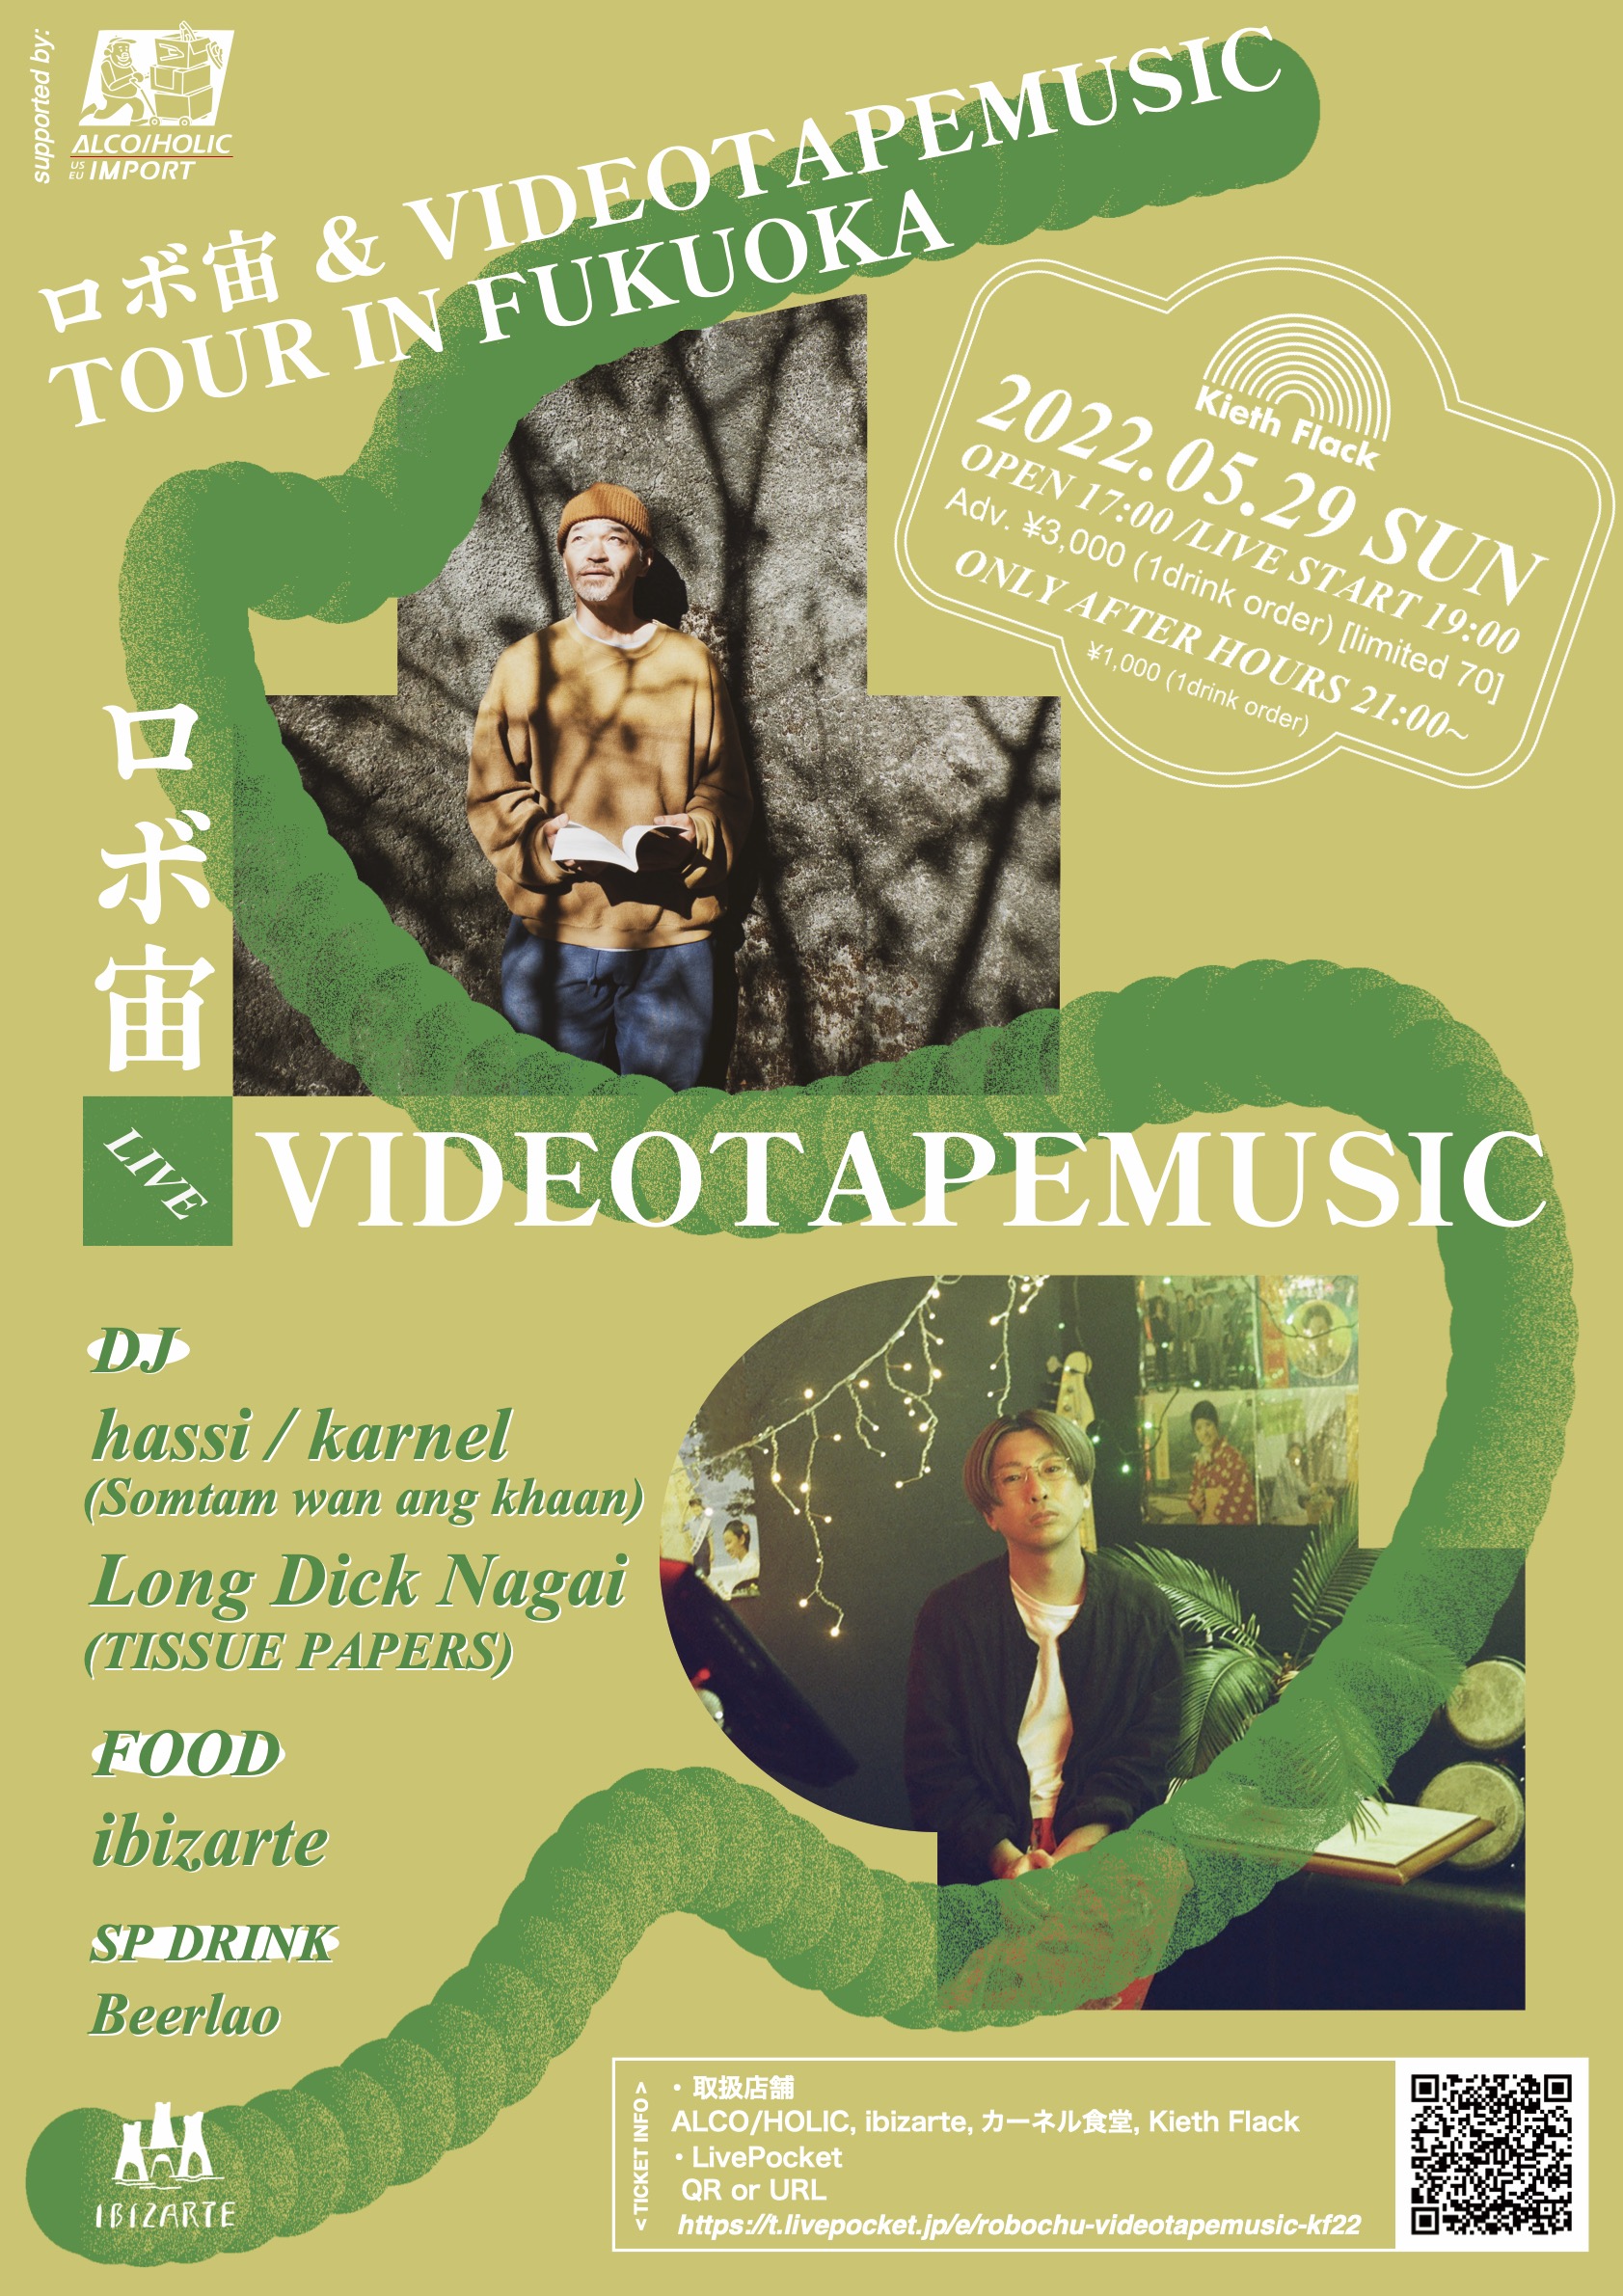 ロボ宙 & VIDEOTAPEMUSIC tour in FUKUOKA